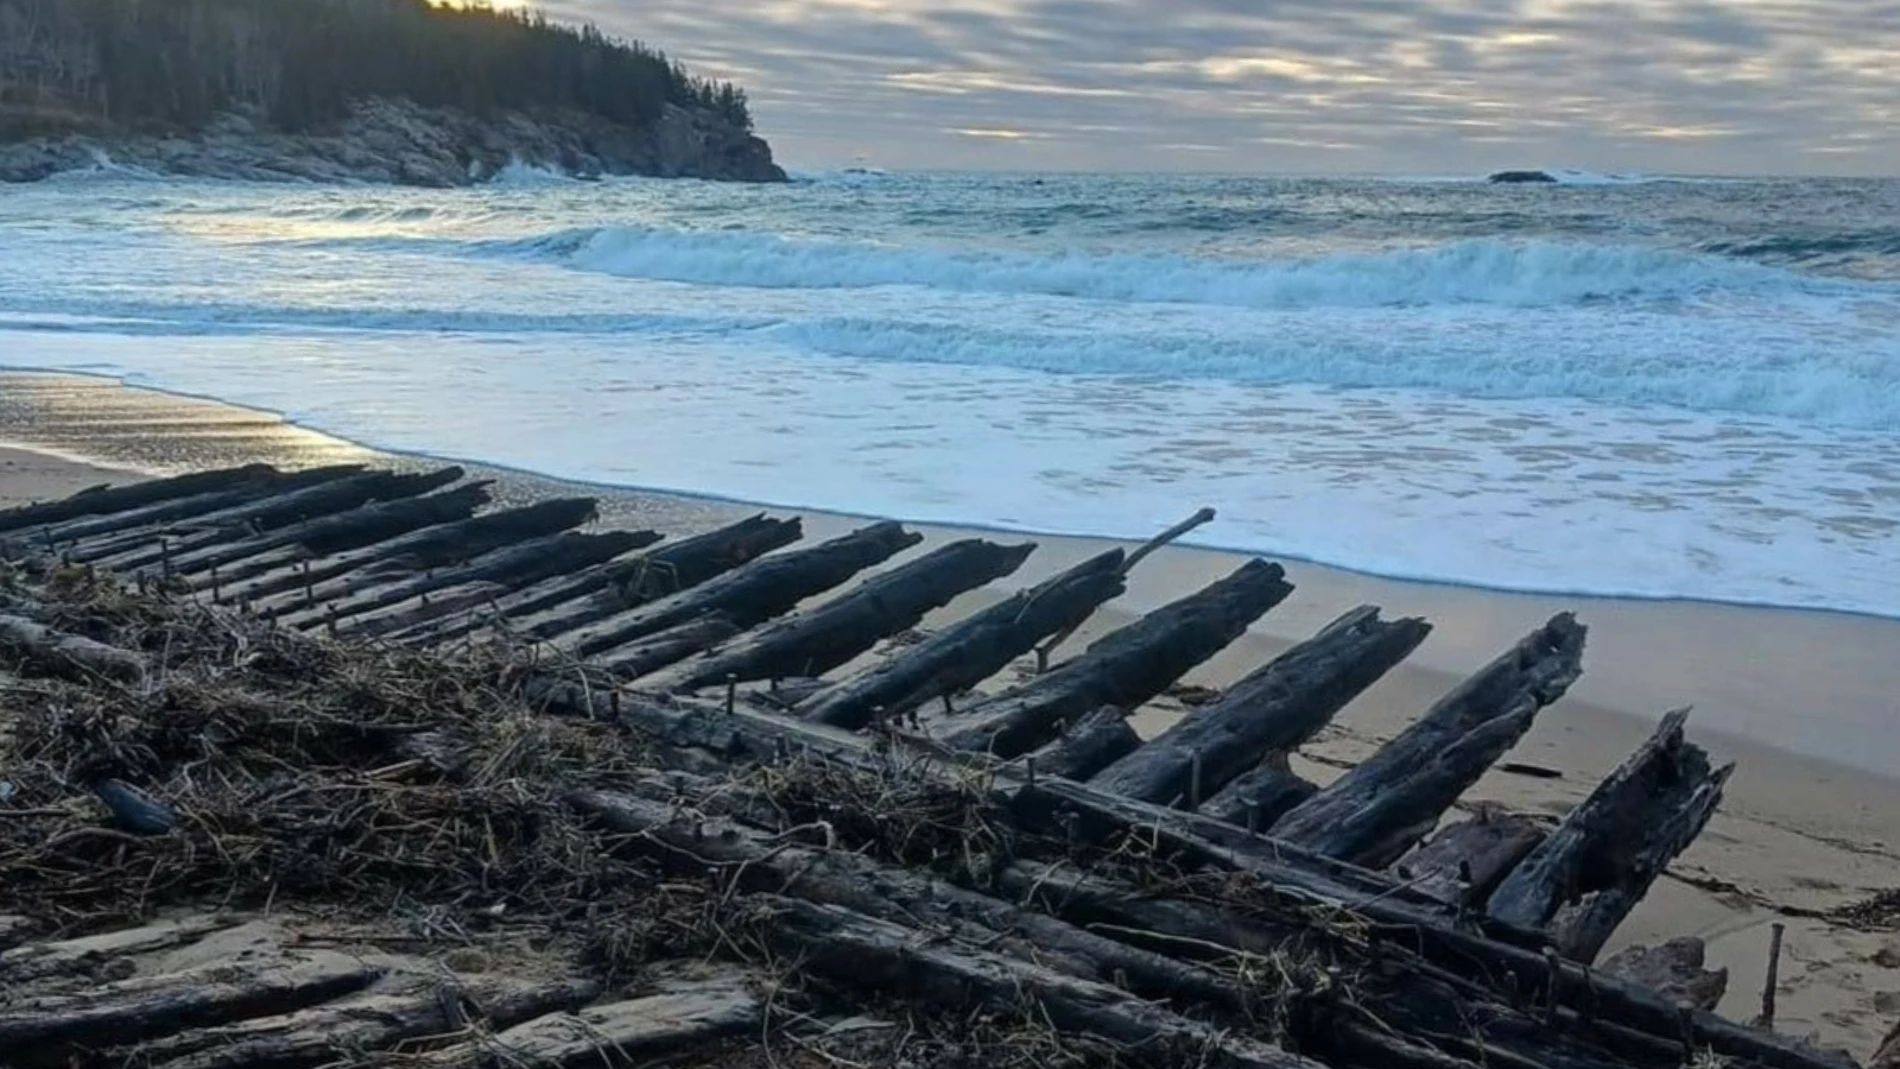 Revelado un naufragio de más de cien años en Maine después de una tormenta